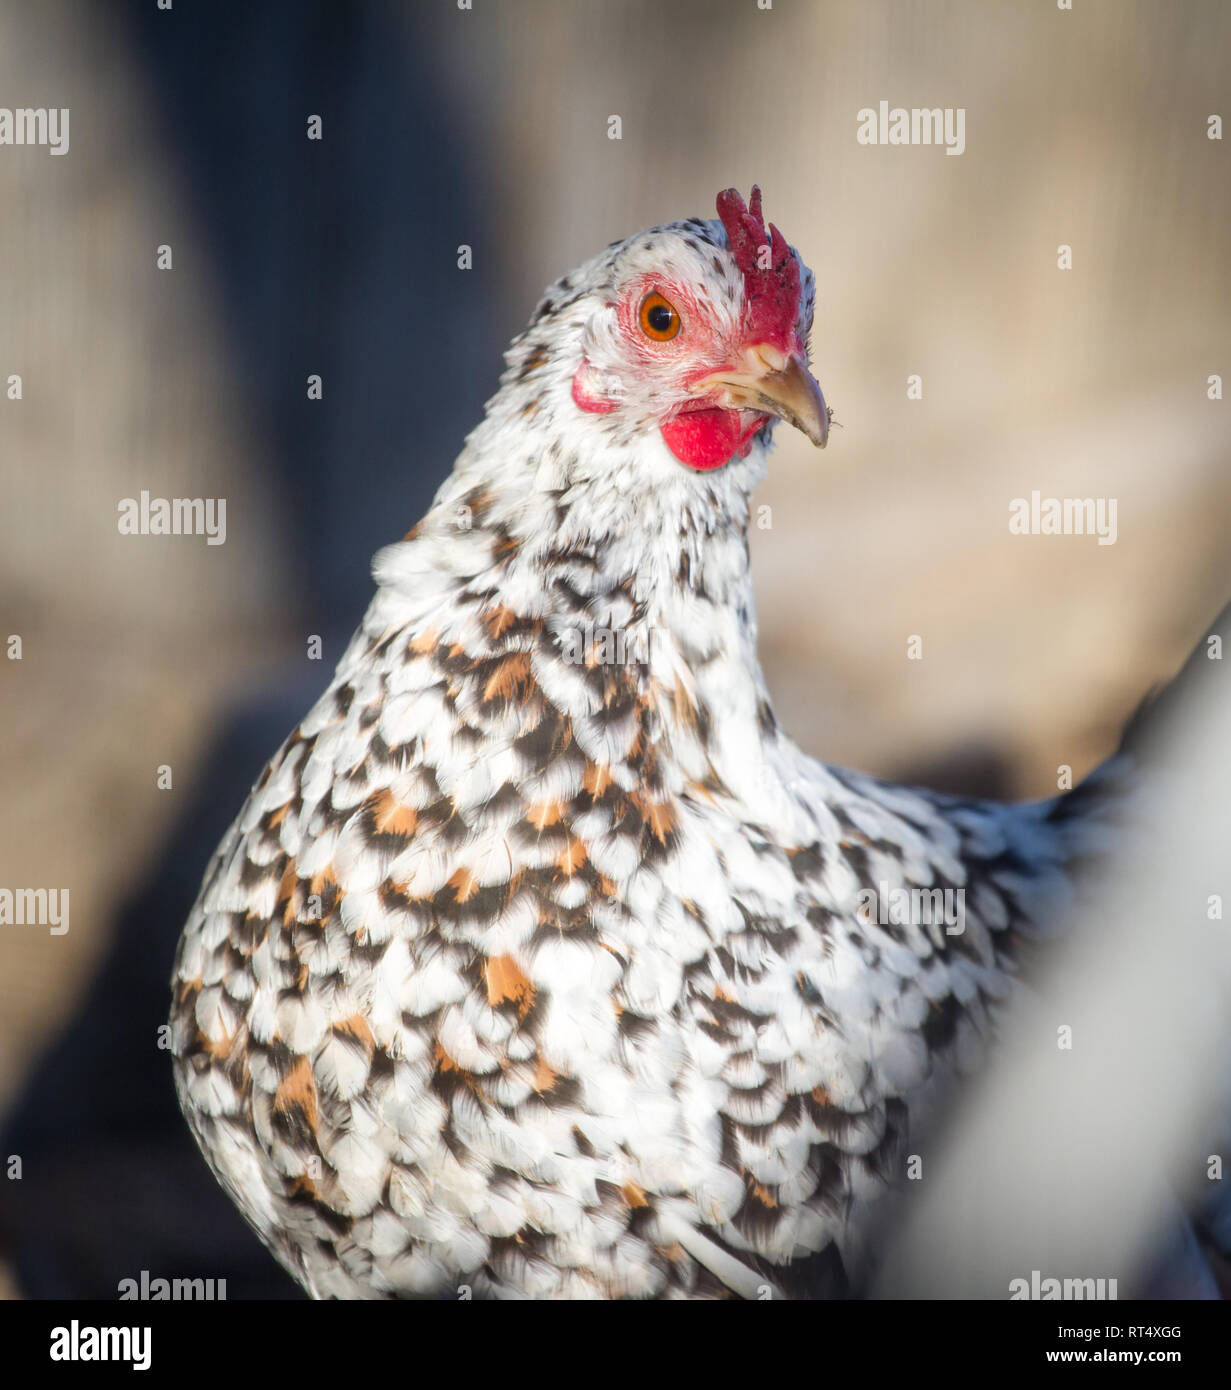 Stoapiperl/Steinhendl Henne, kritisch bedrohte Huhn züchten aus Österreich (Gallus gallus domesticus) Stockfoto